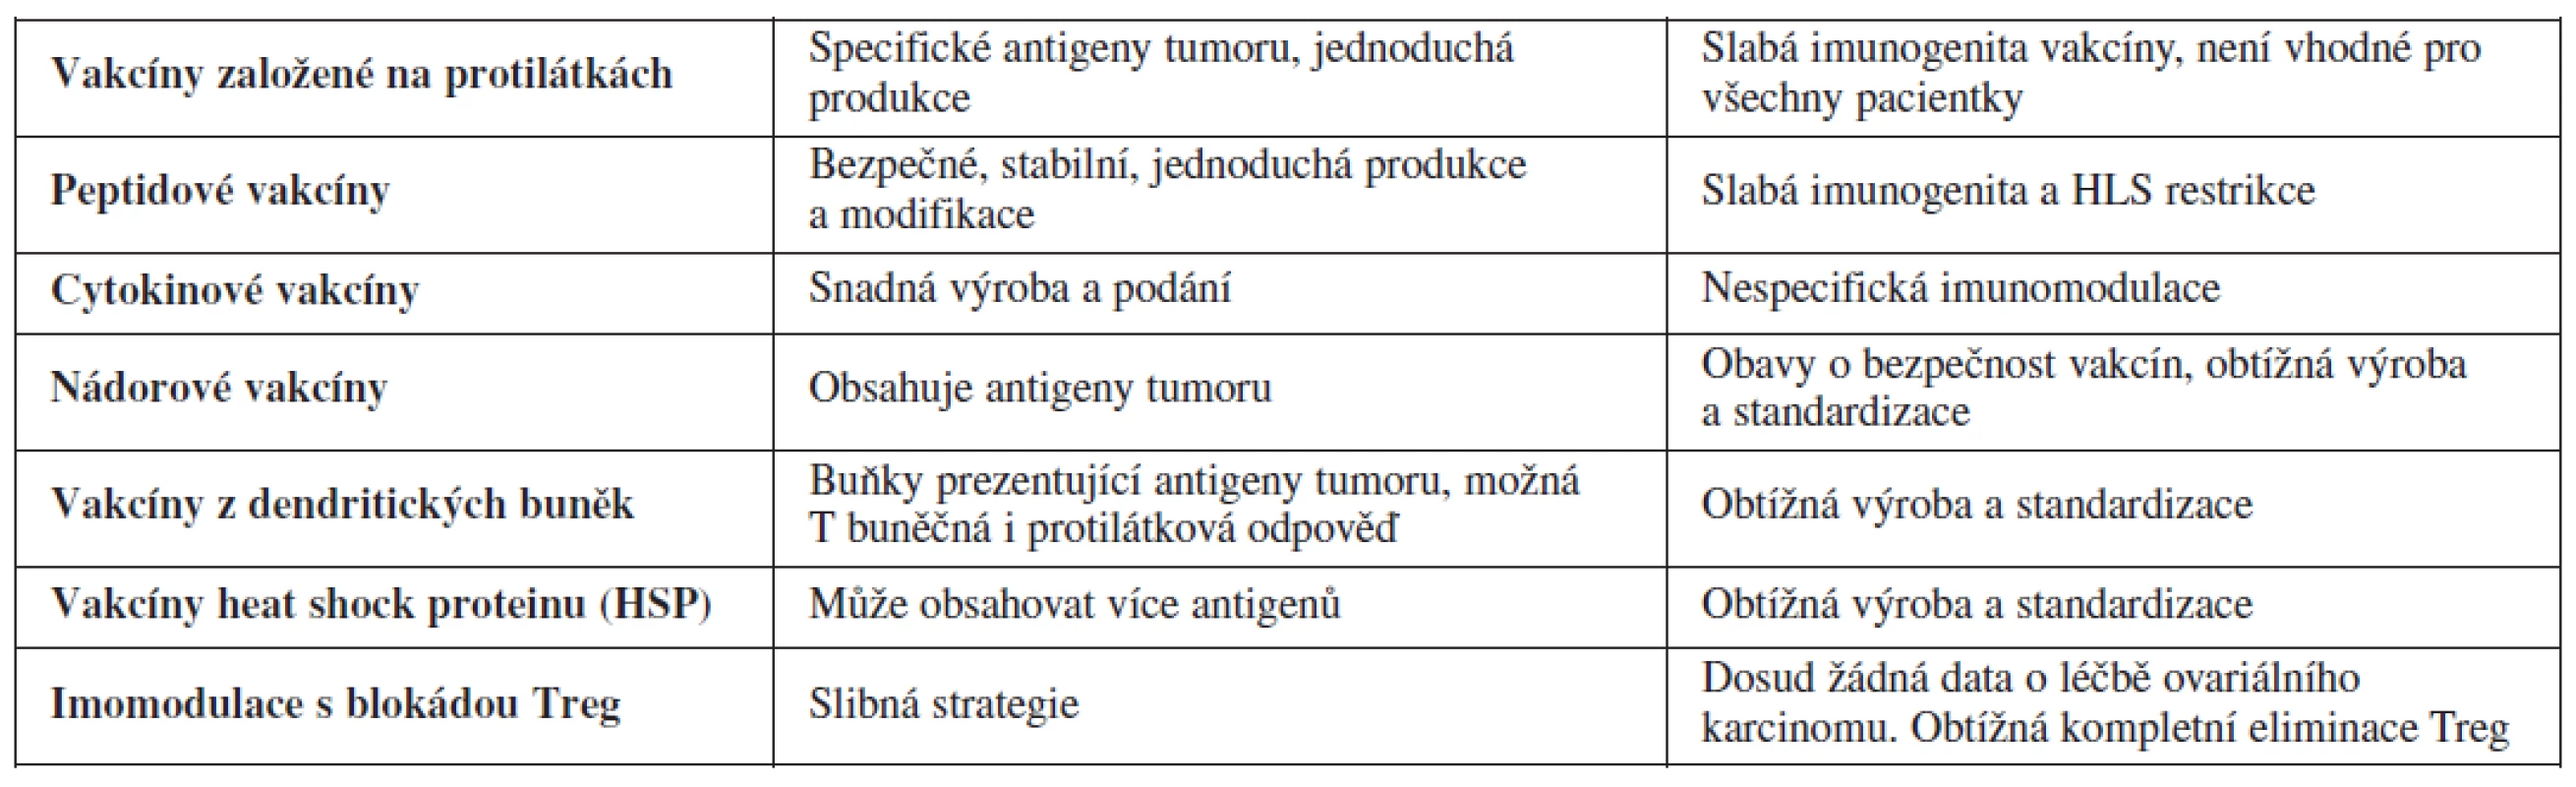 Tabulka shrnující výsledky a limitace imunoterapie ovariálního karcinomu